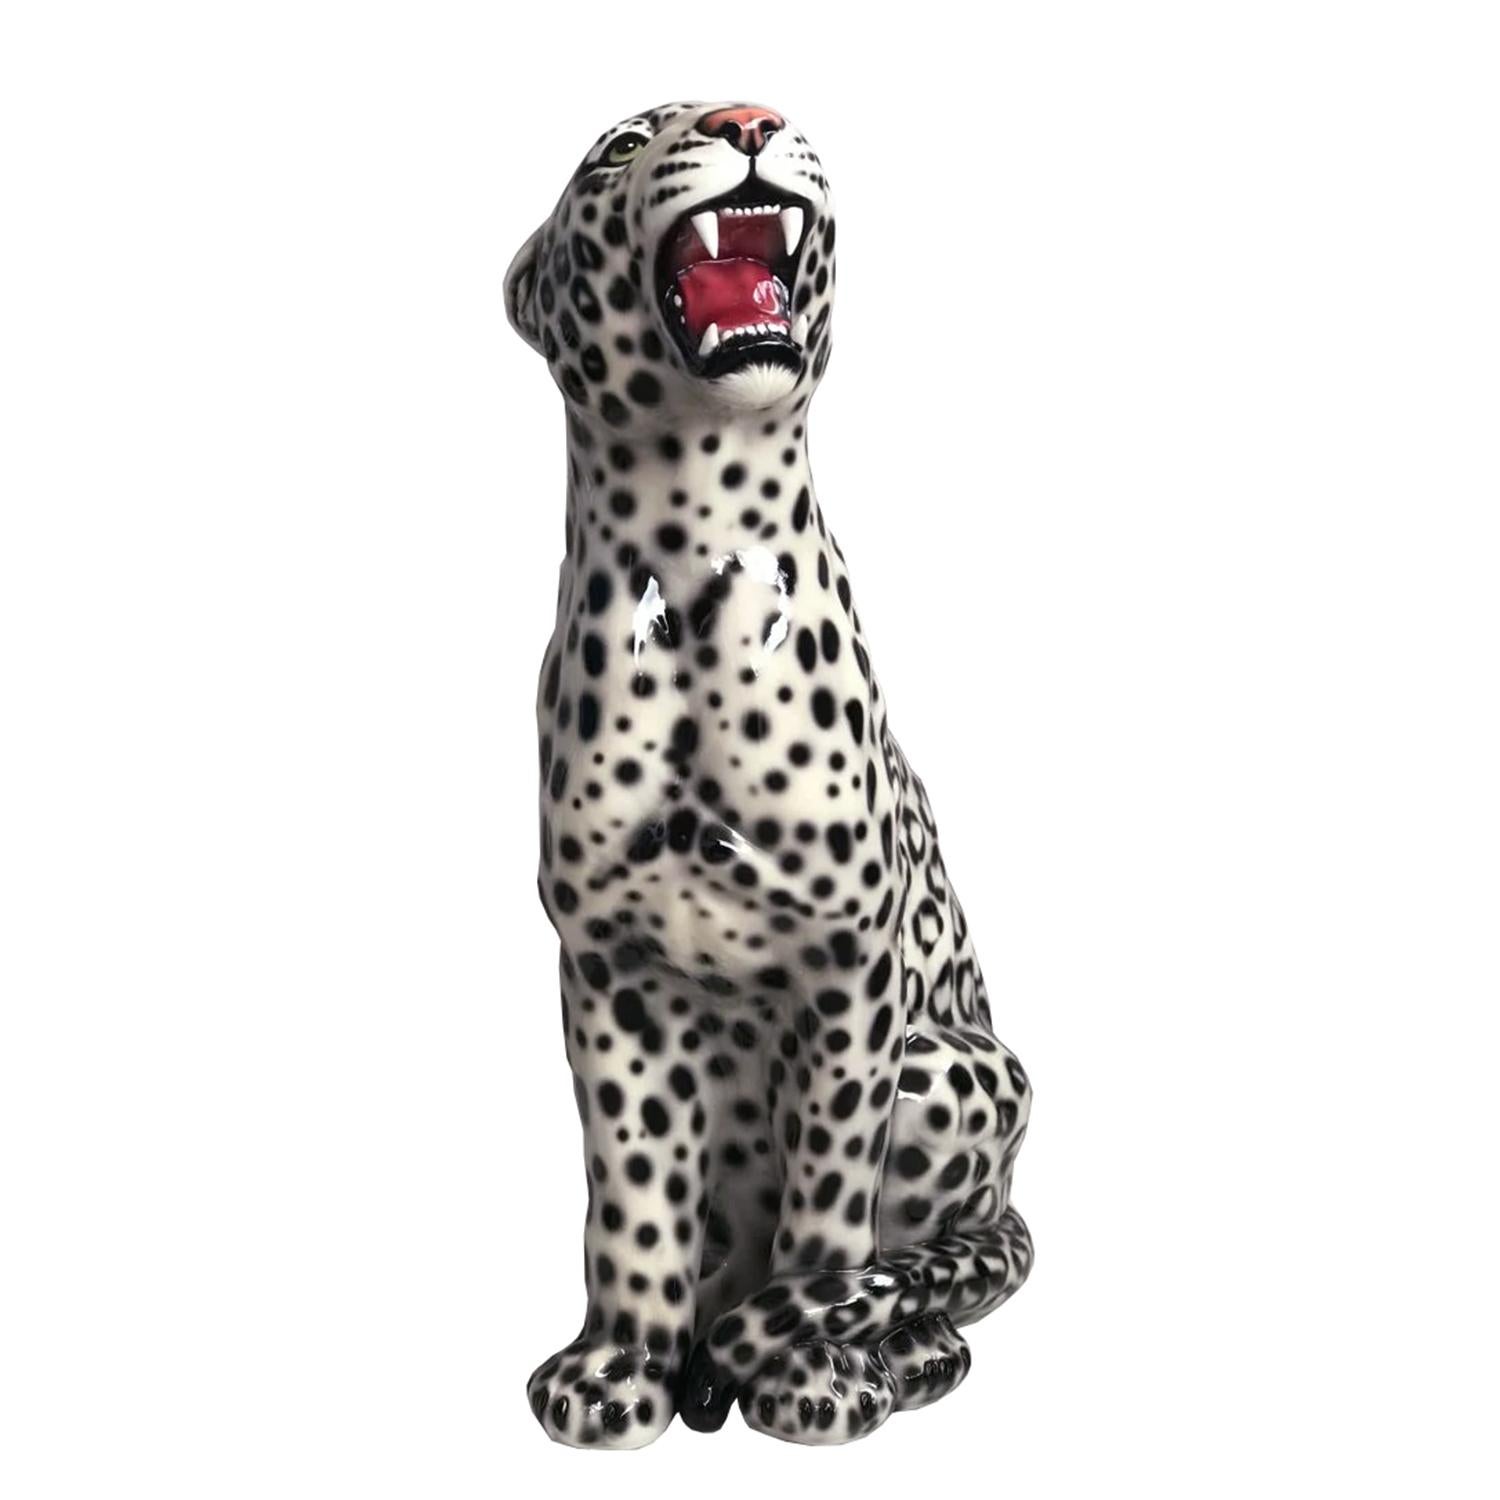 Sculpture léopard noir et blanc à droite.
Le tout en céramique artisanale fabriquée en Italie.